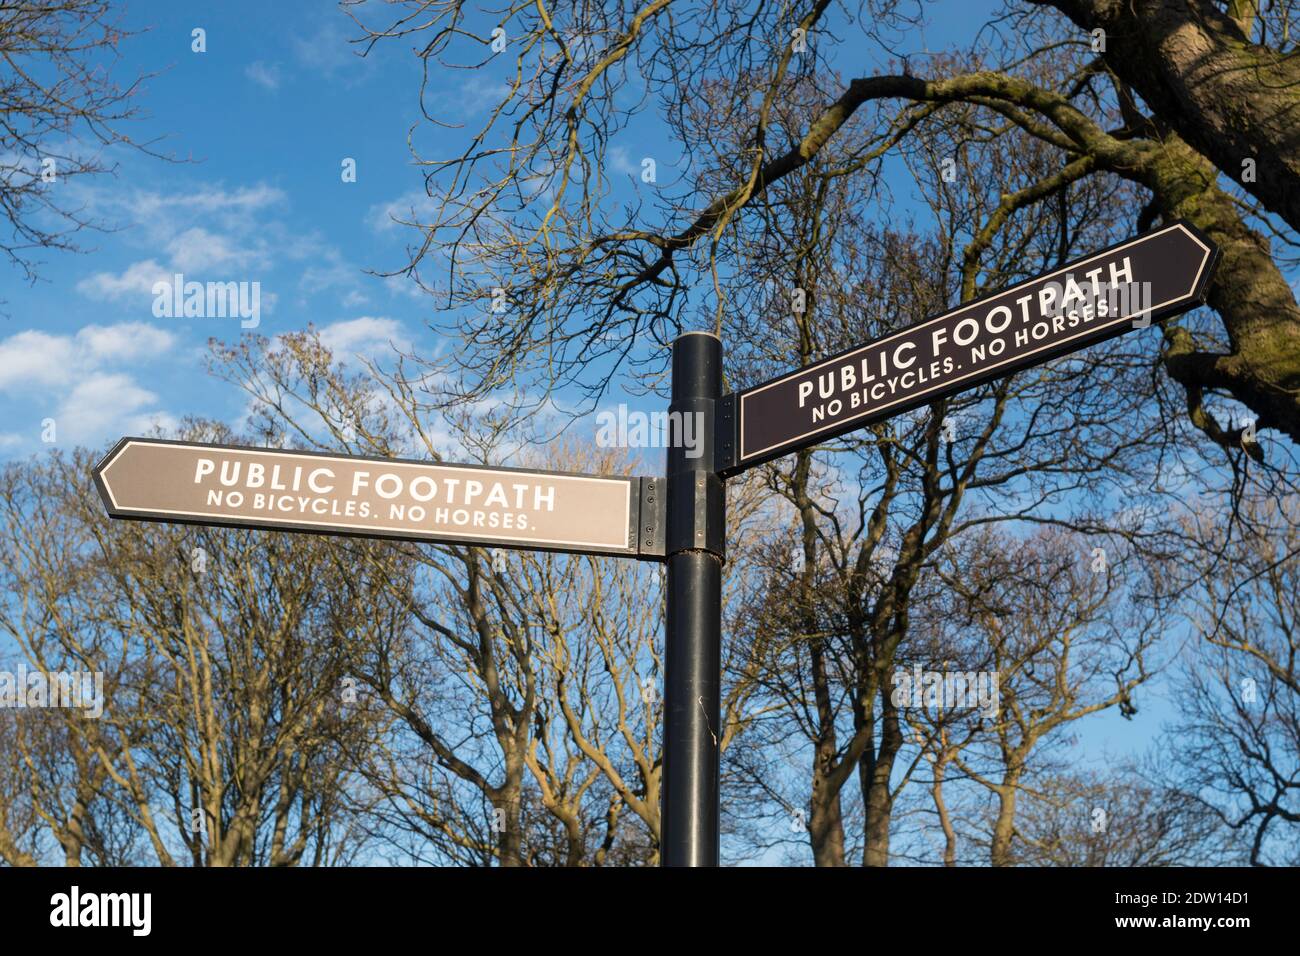 Ein öffentliches Wanderwegschild, das darauf hinweist, dass keine Fahrräder oder Pferde erlaubt sind, England, Großbritannien Stockfoto